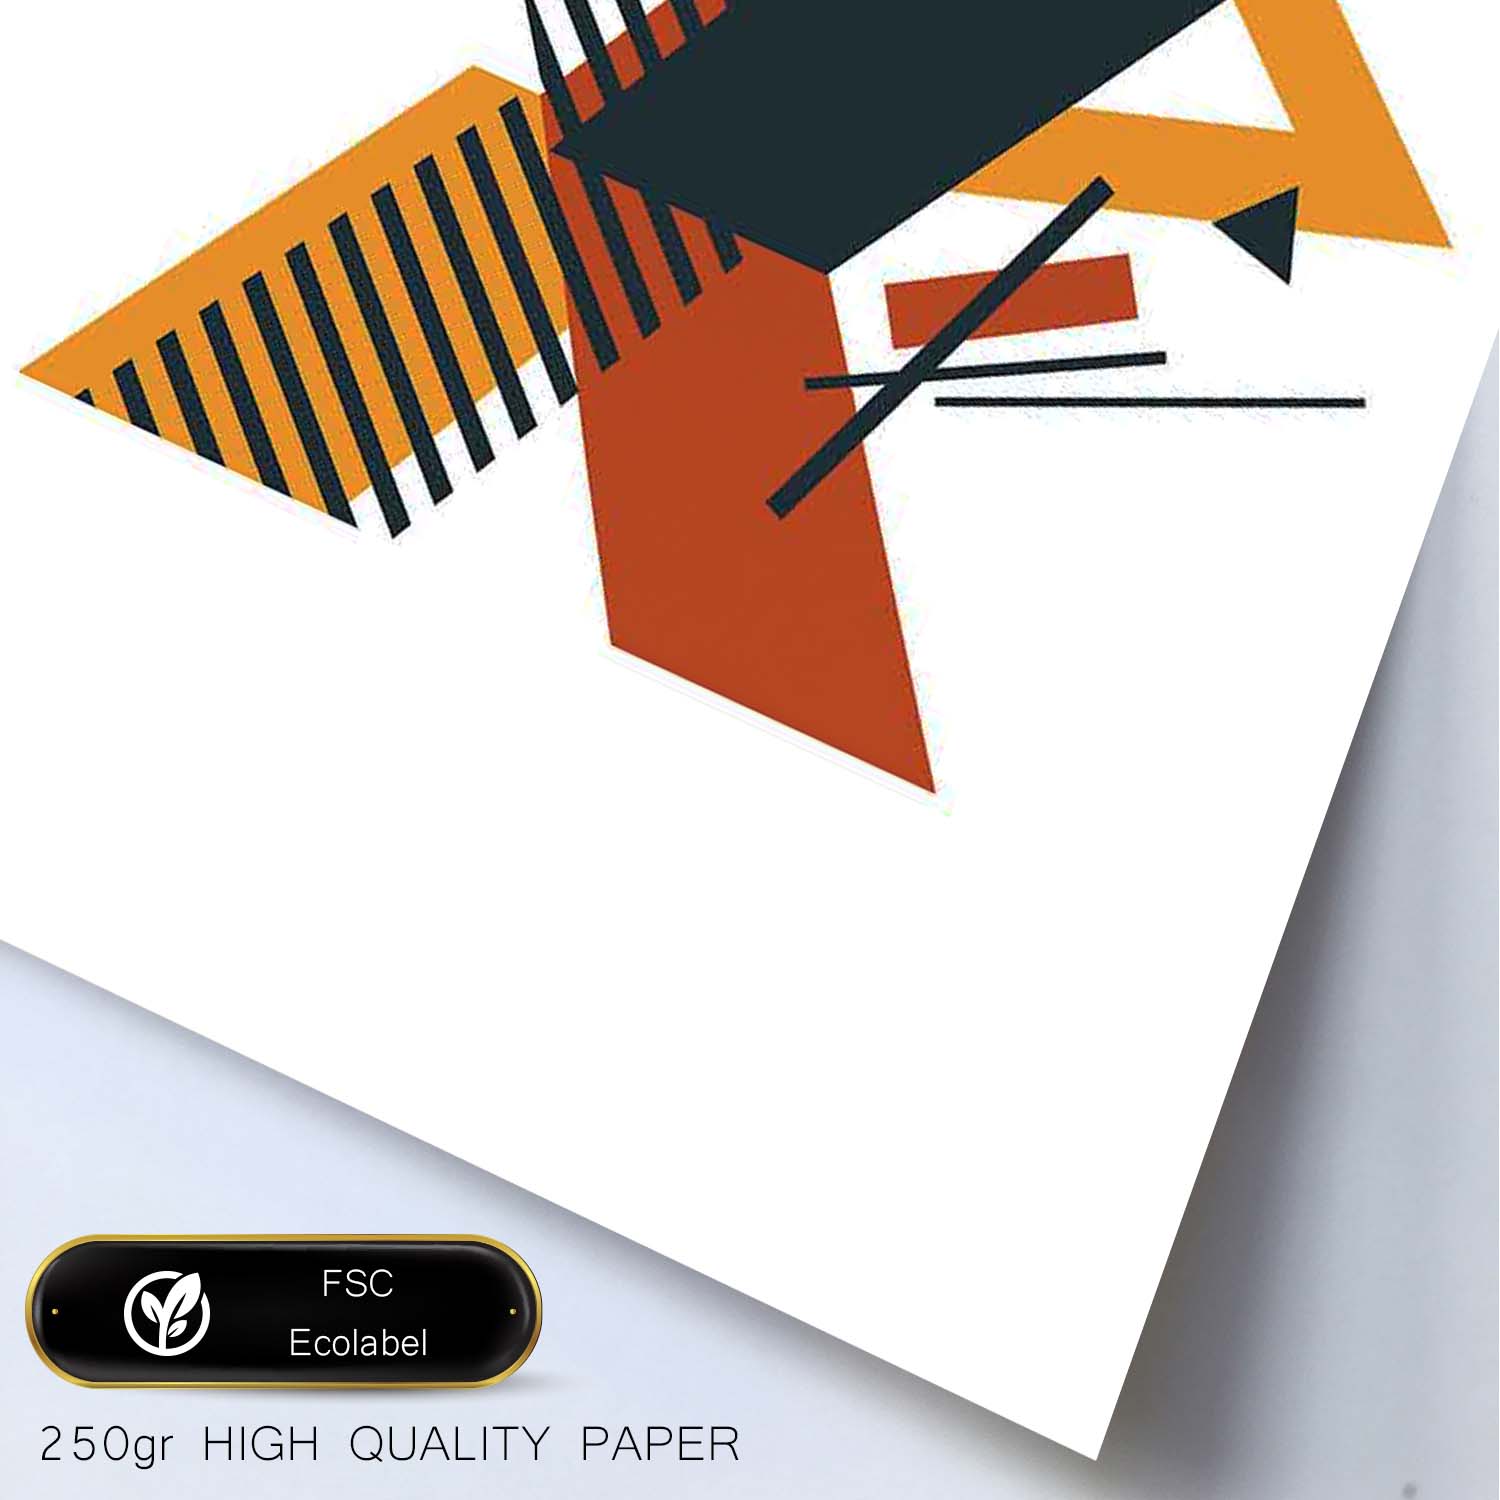 Poster de letra X. Lámina estilo Geometria con formas con imágenes del alfabeto.-Artwork-Nacnic-Nacnic Estudio SL